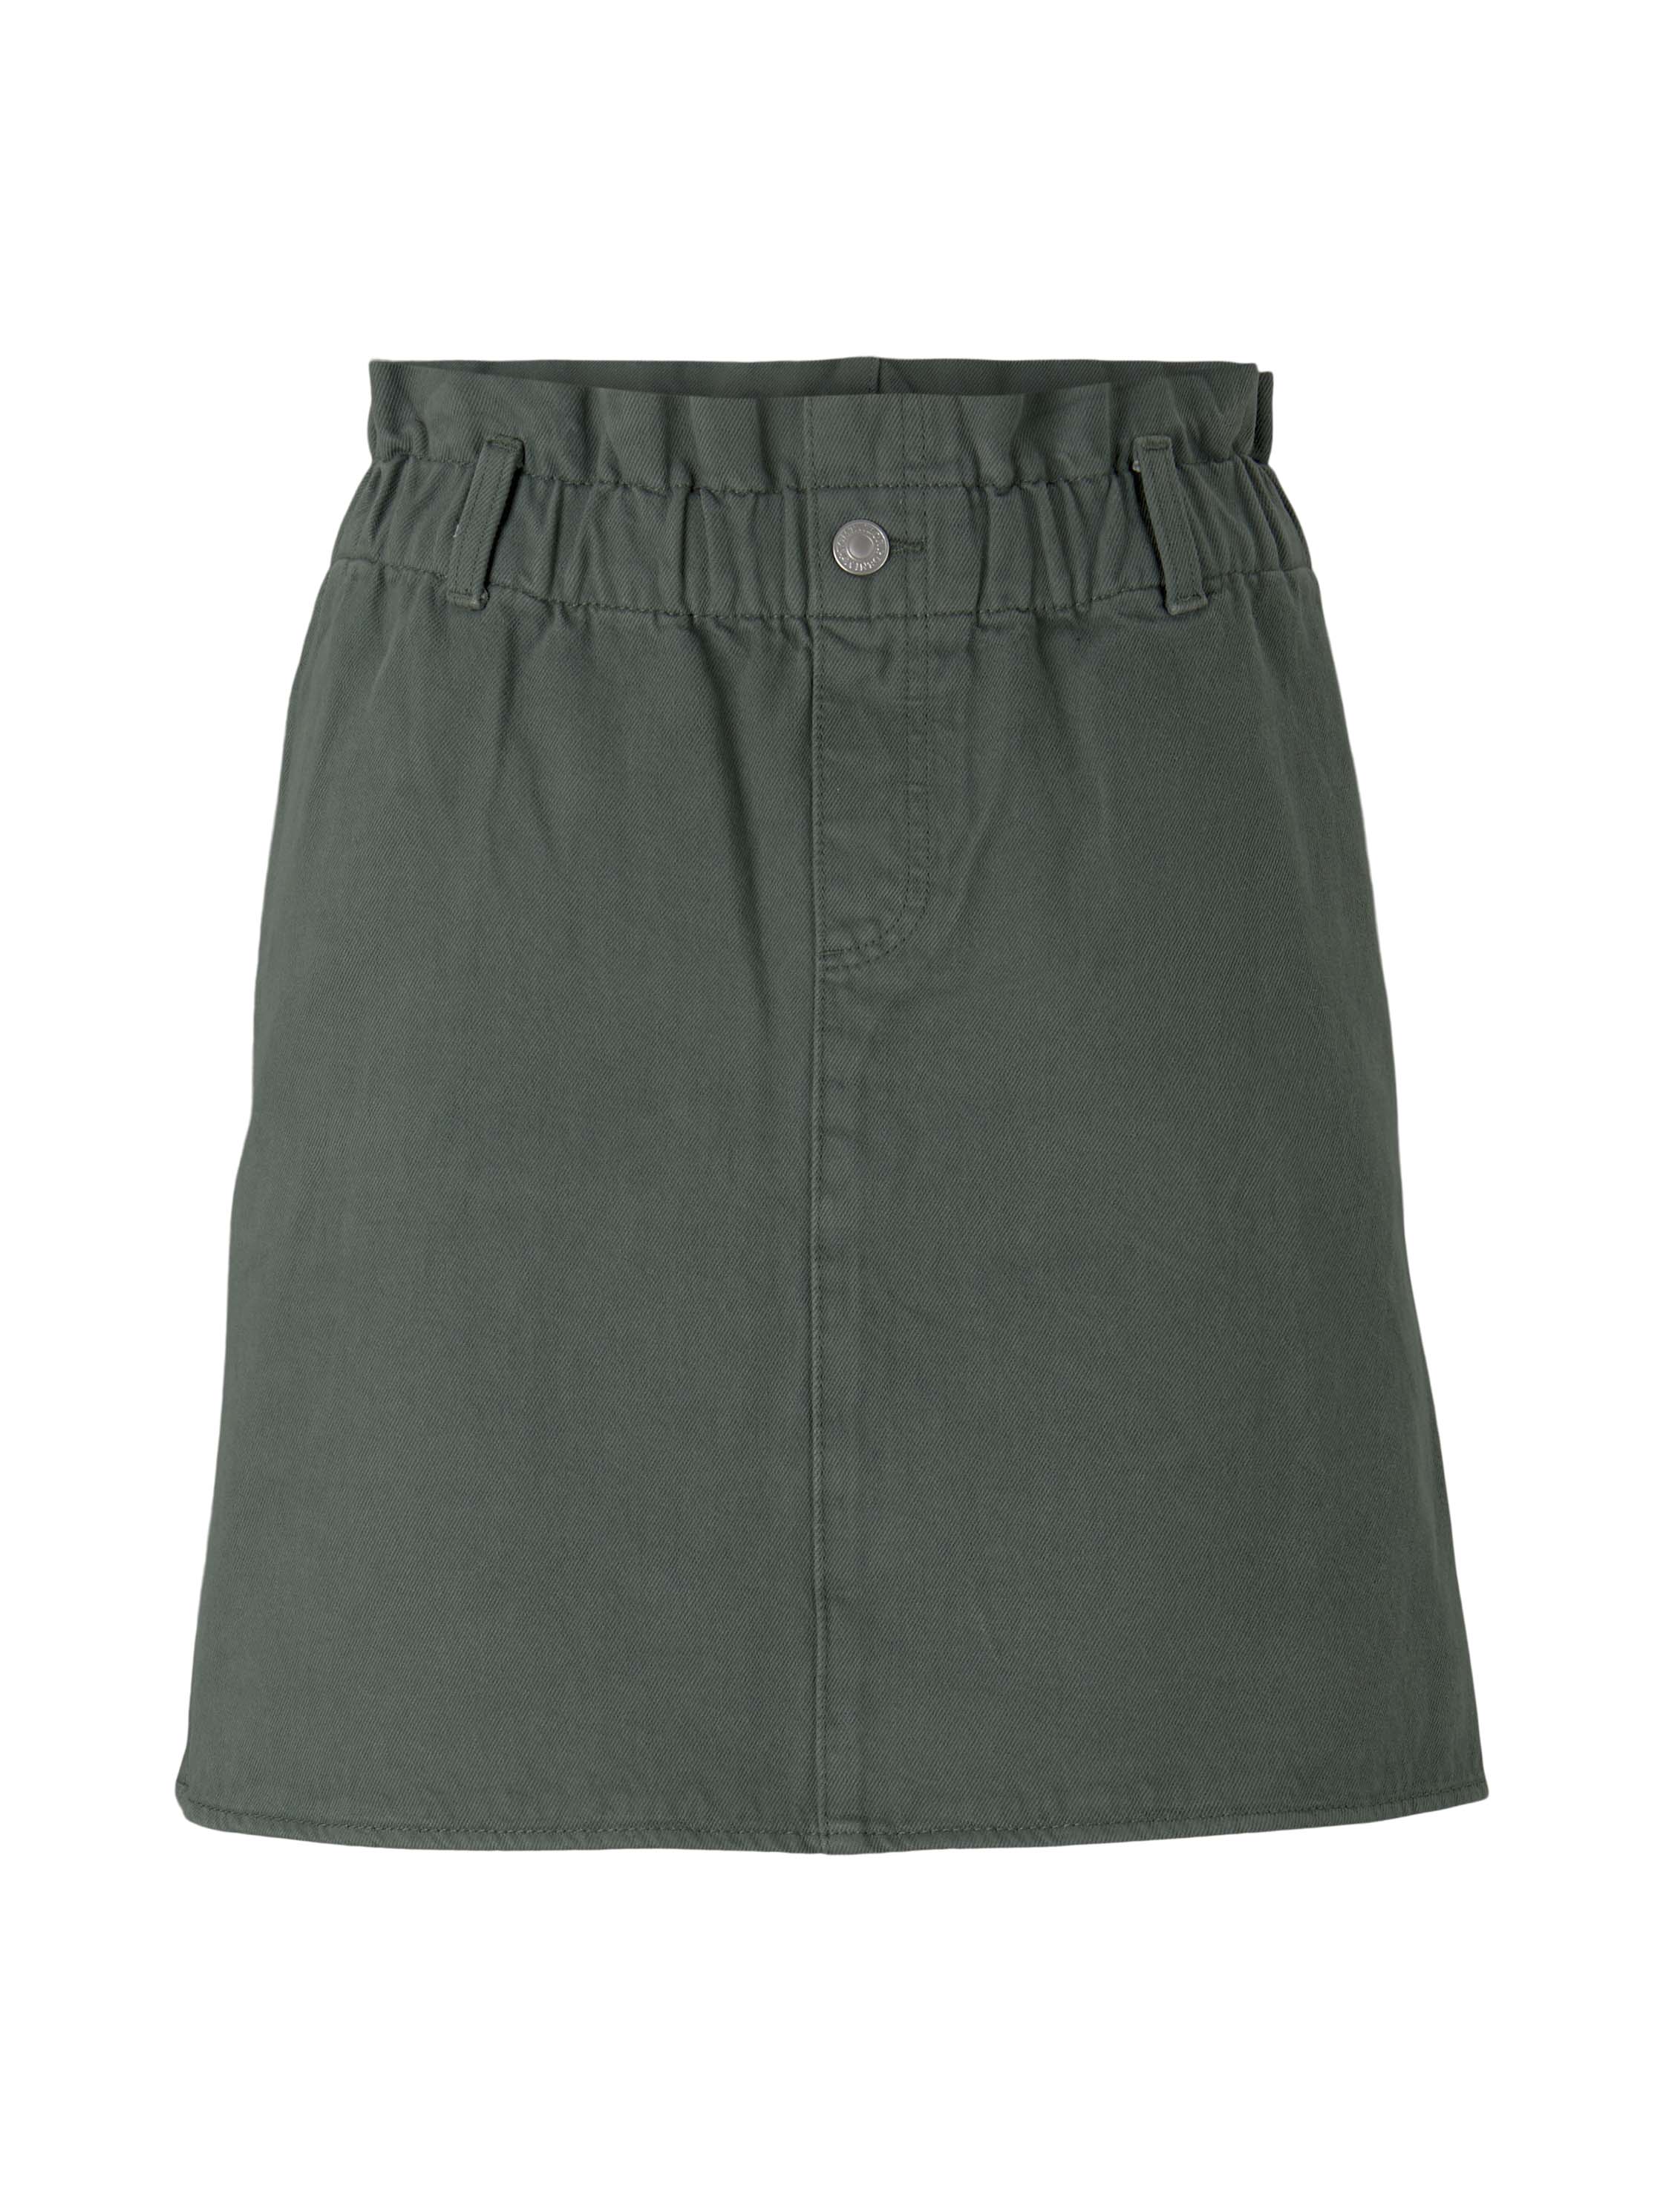 denim paperbag skirt, dusty pine green